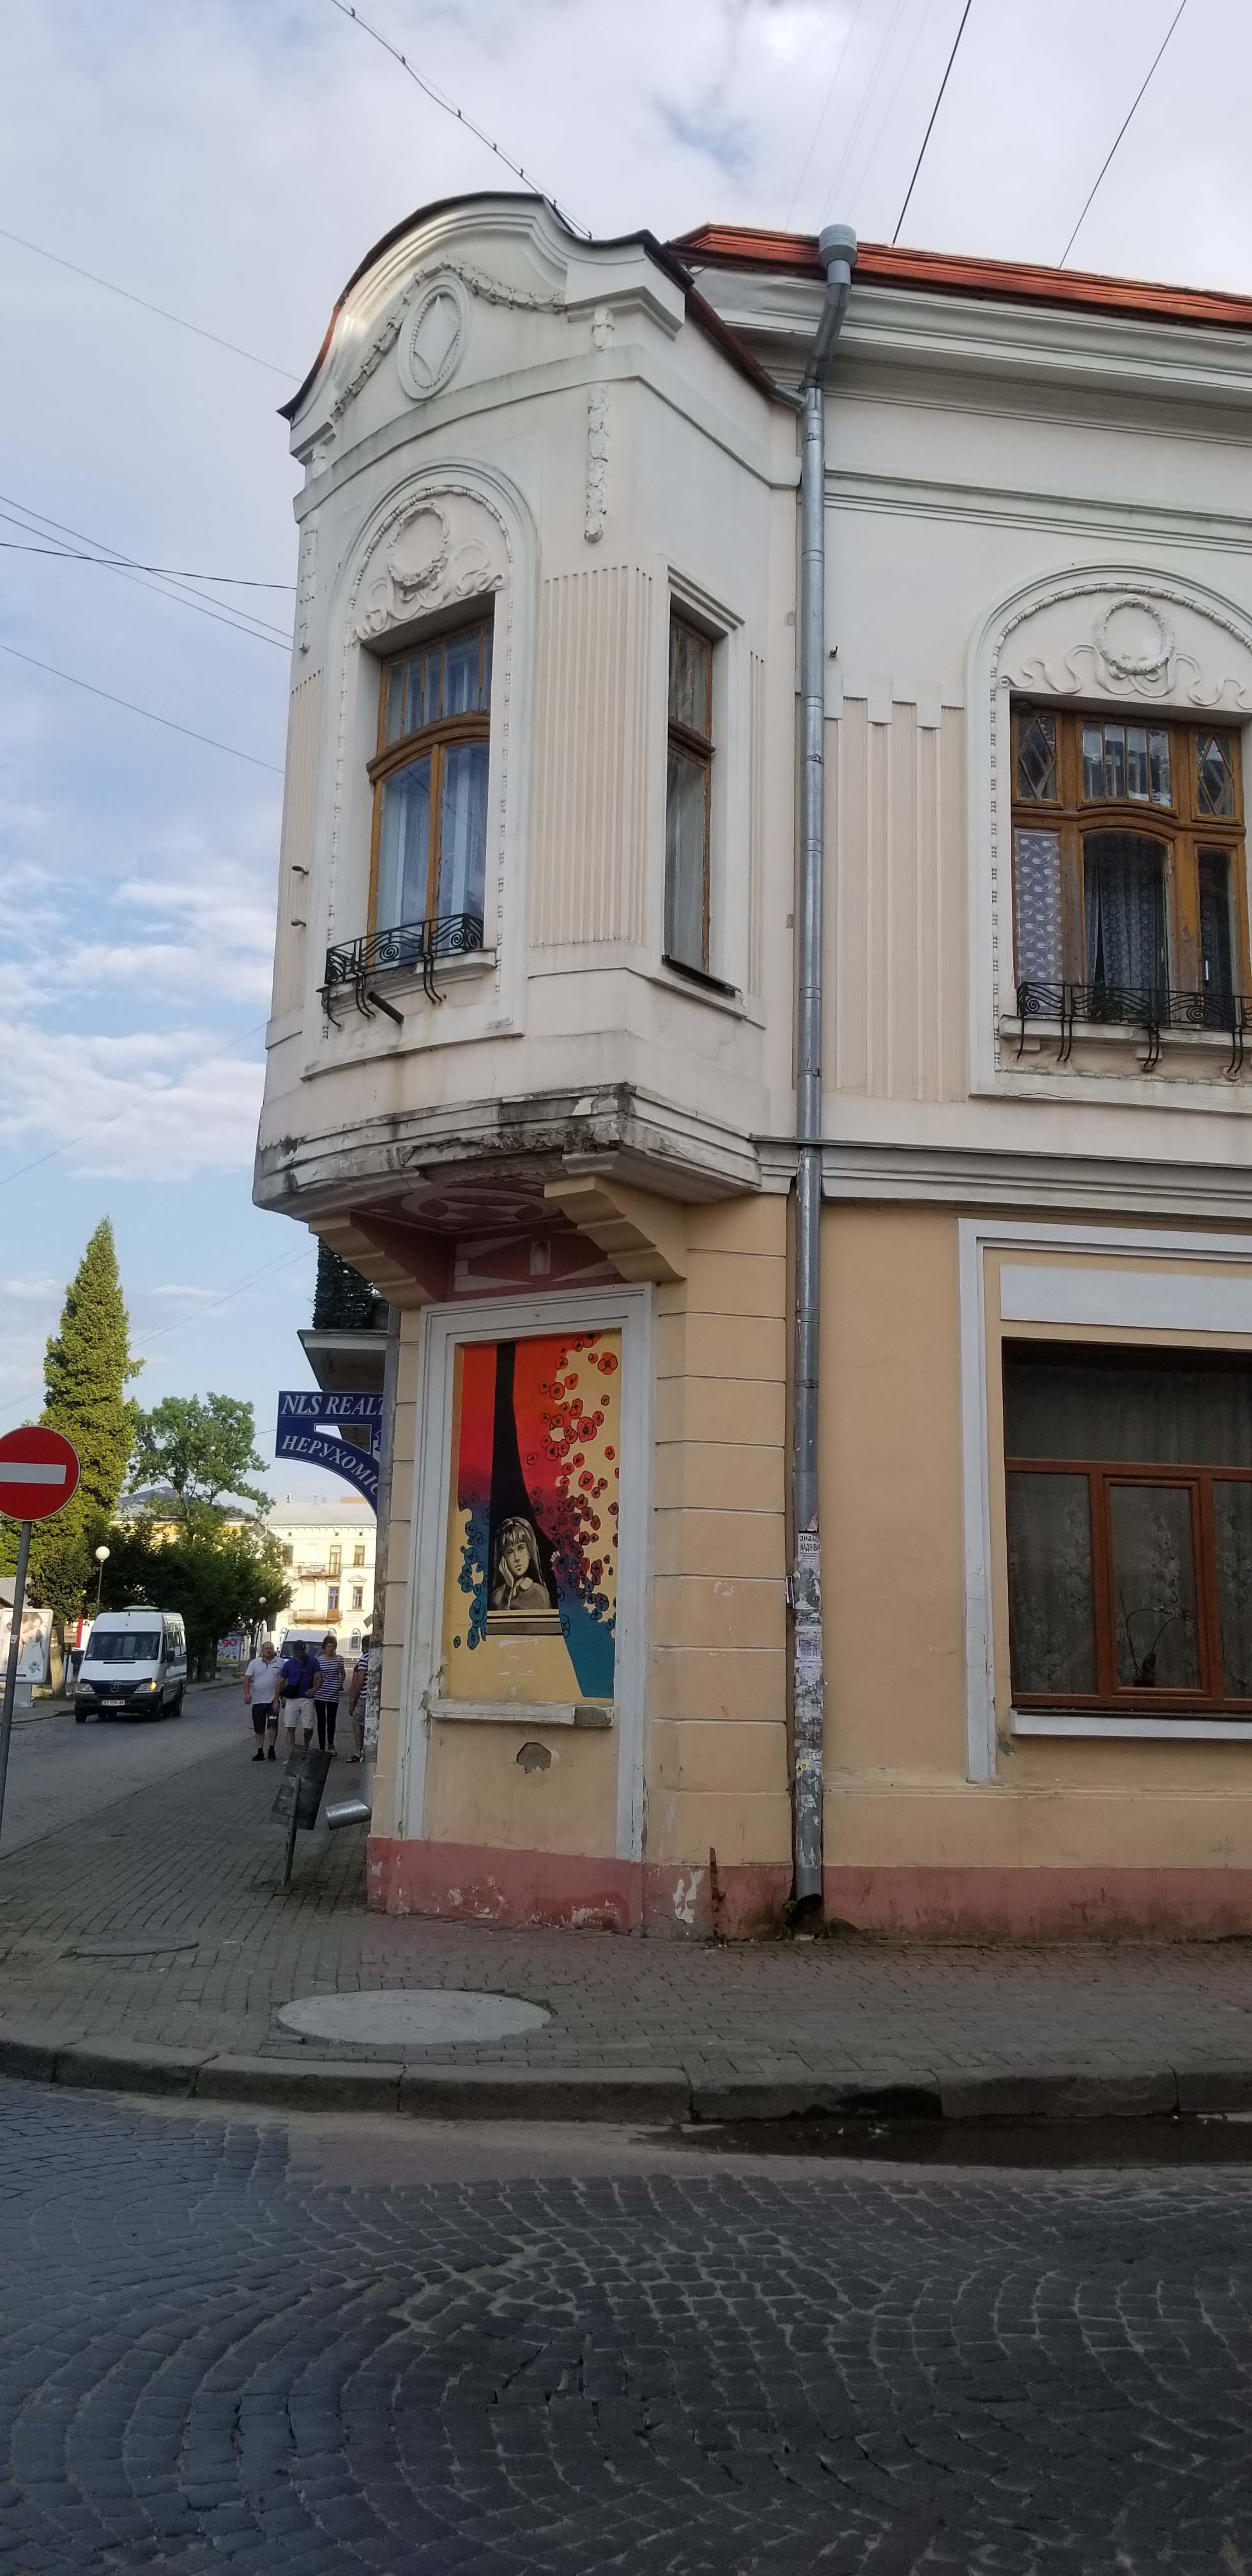 Exterior of ghetto –
                  corner